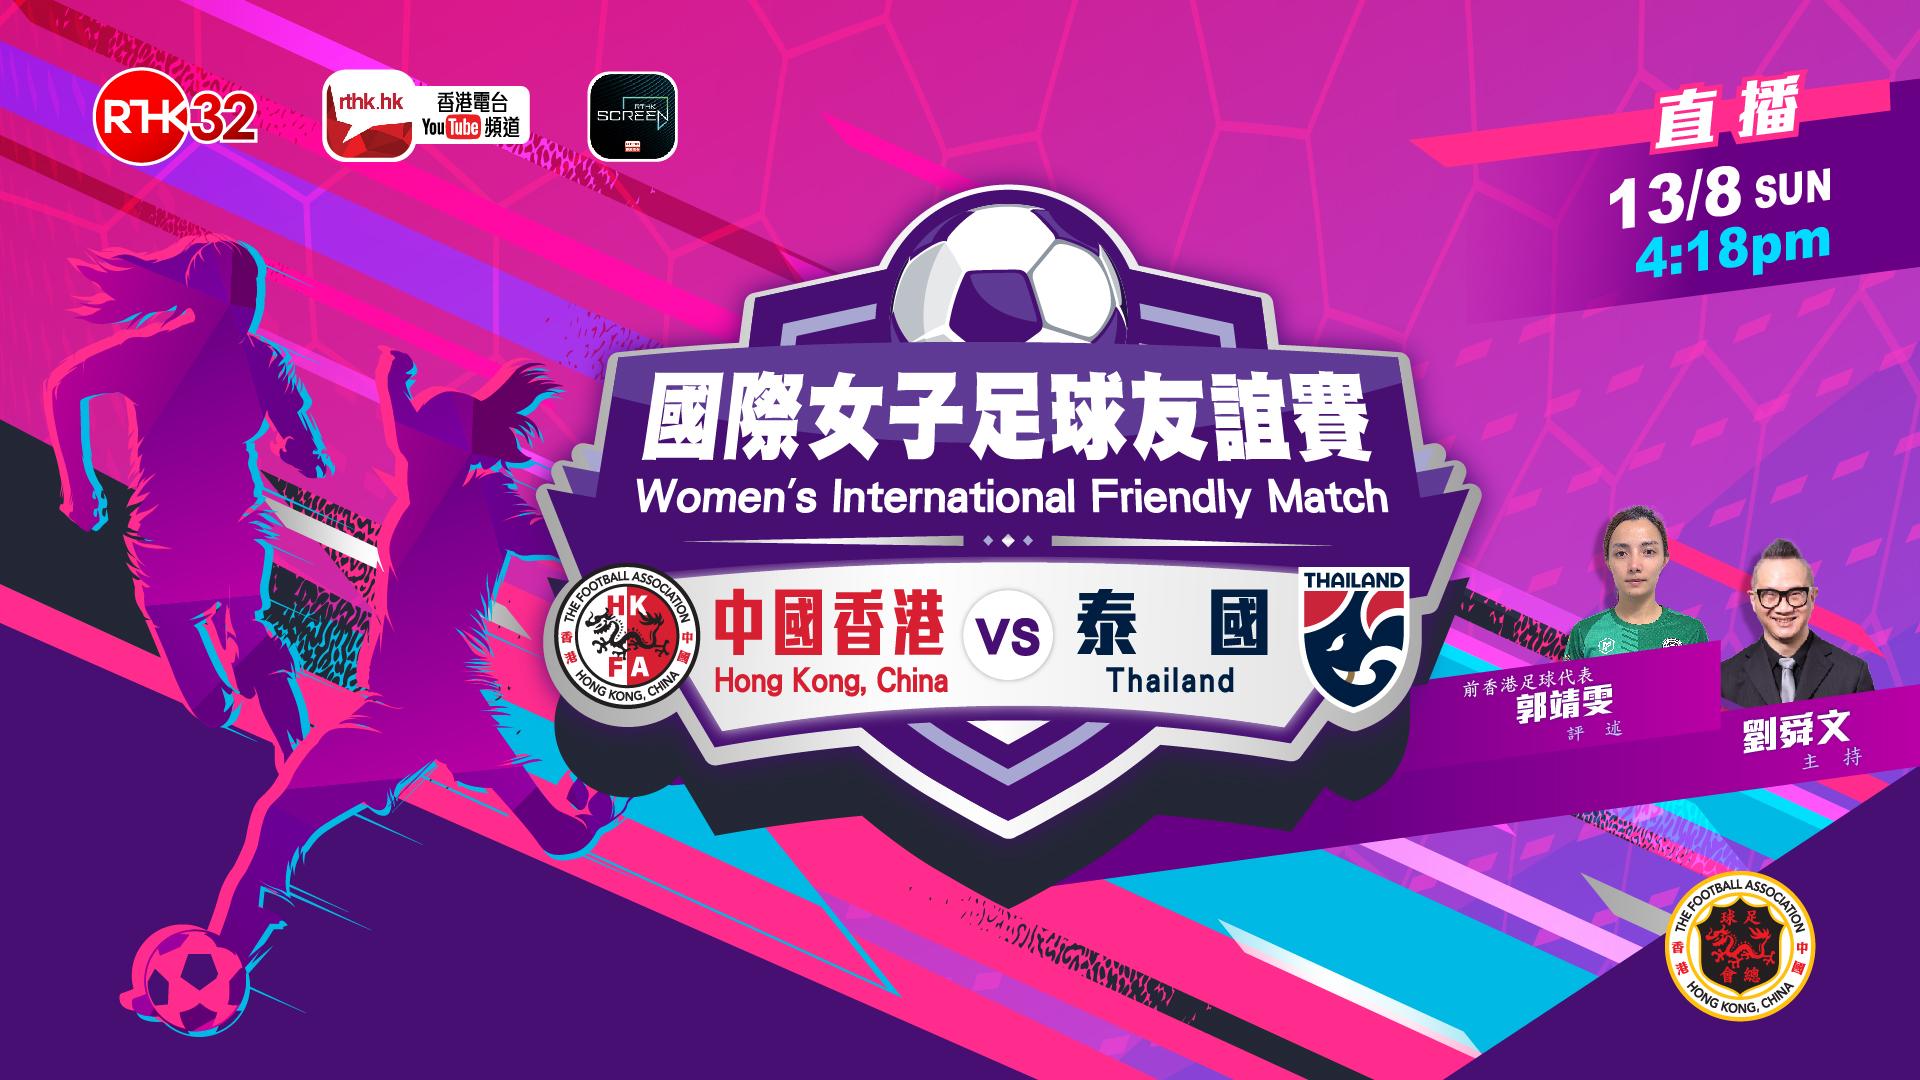 國際女子足球友誼賽 (中國香港 對 泰國)